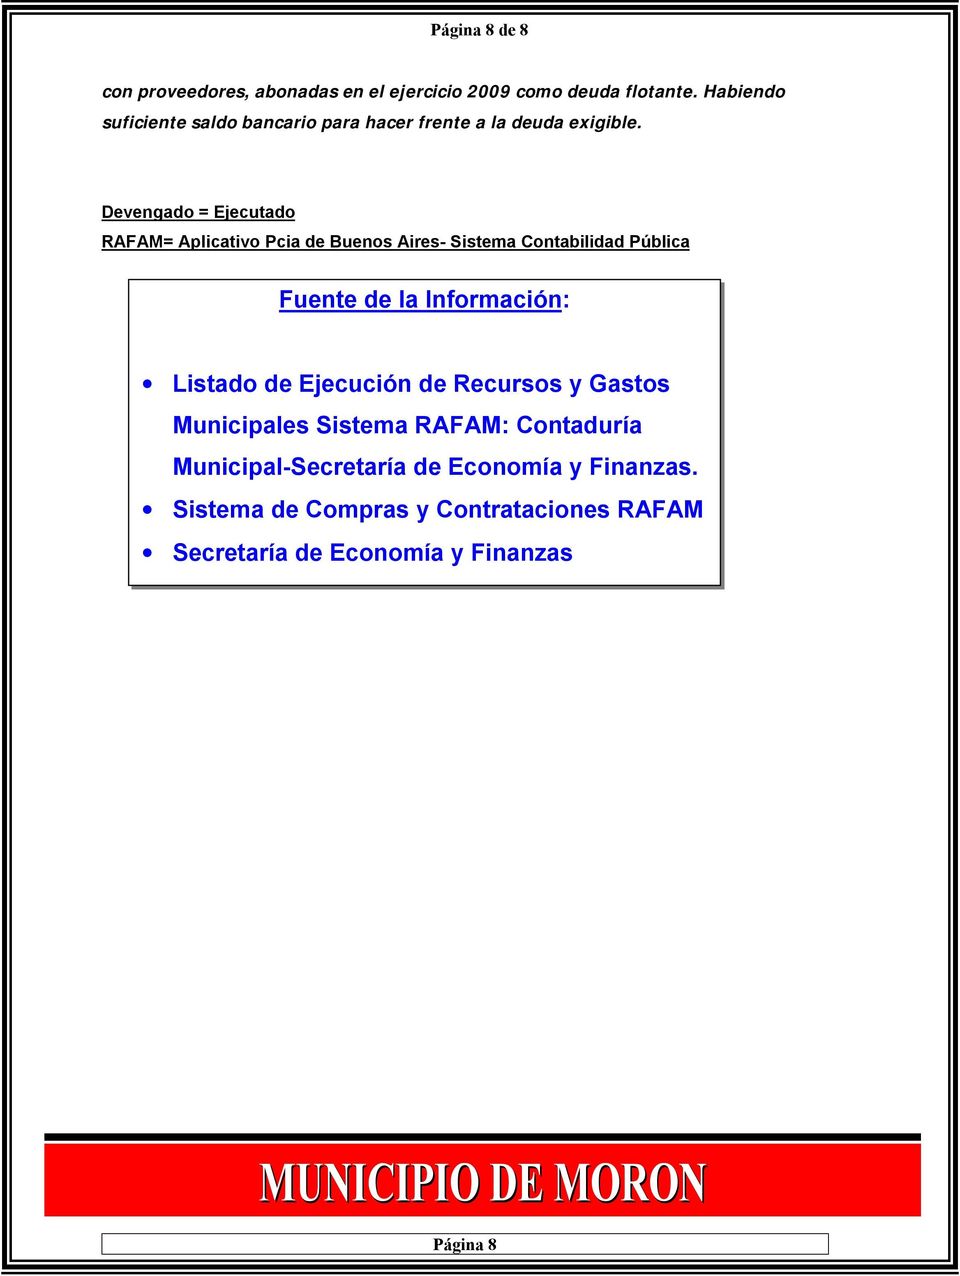 Devengado = Ejecutado RAFAM= Aplicativo Pcia de Buenos Aires- Sistema Contabilidad Pública Fuente de la Información: Listado